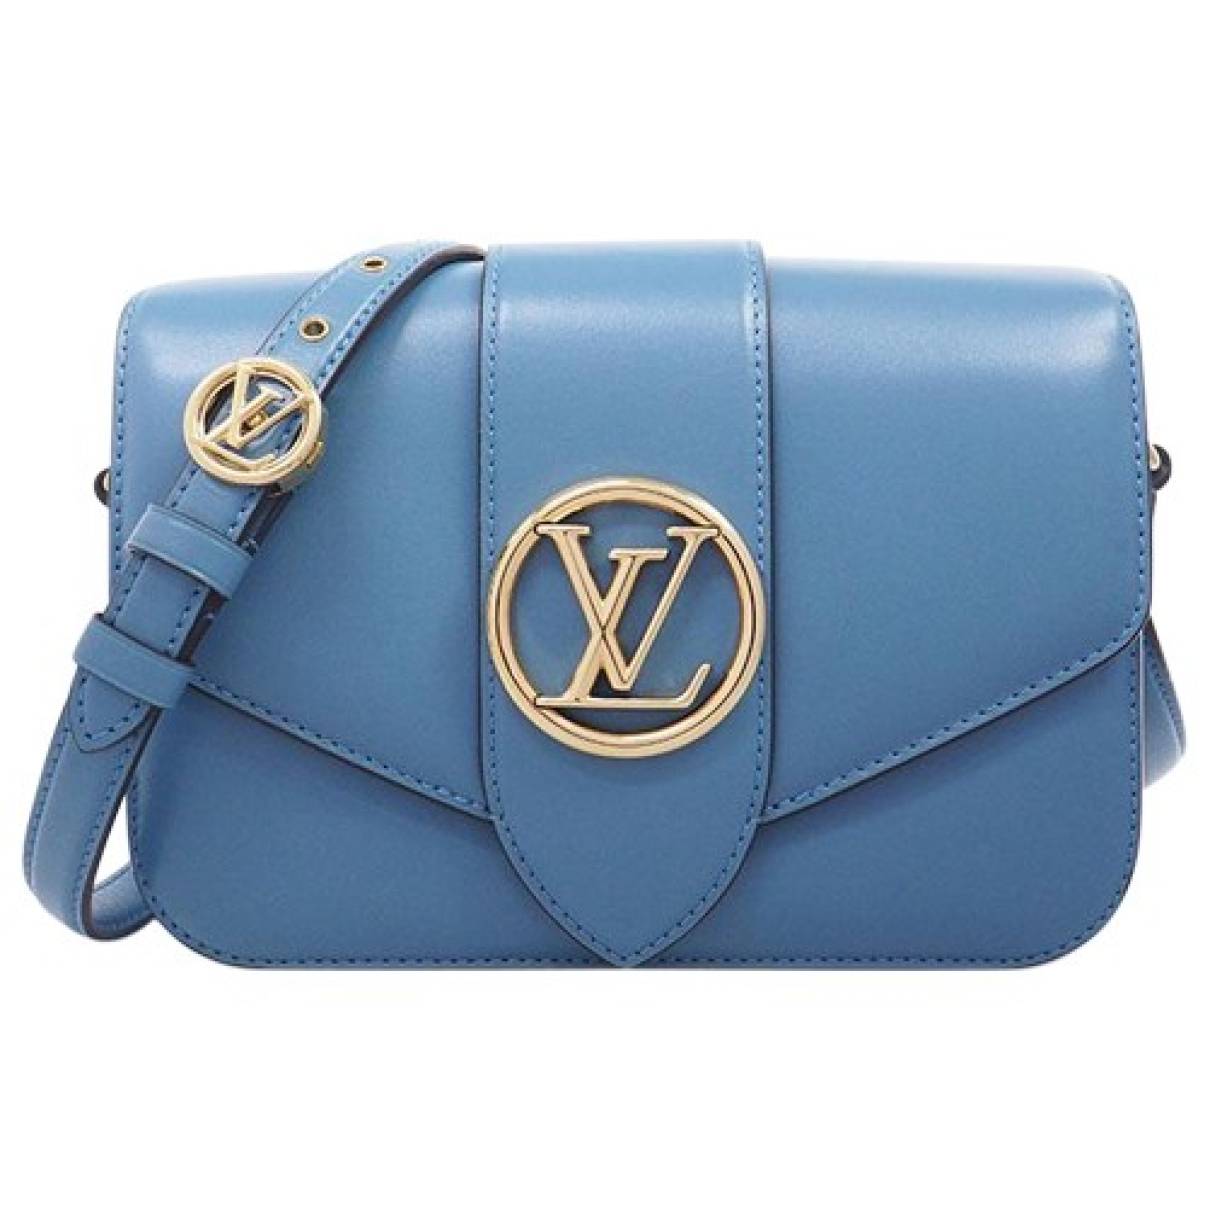 LOUIS VUITTON Women's Handtasche in Blau